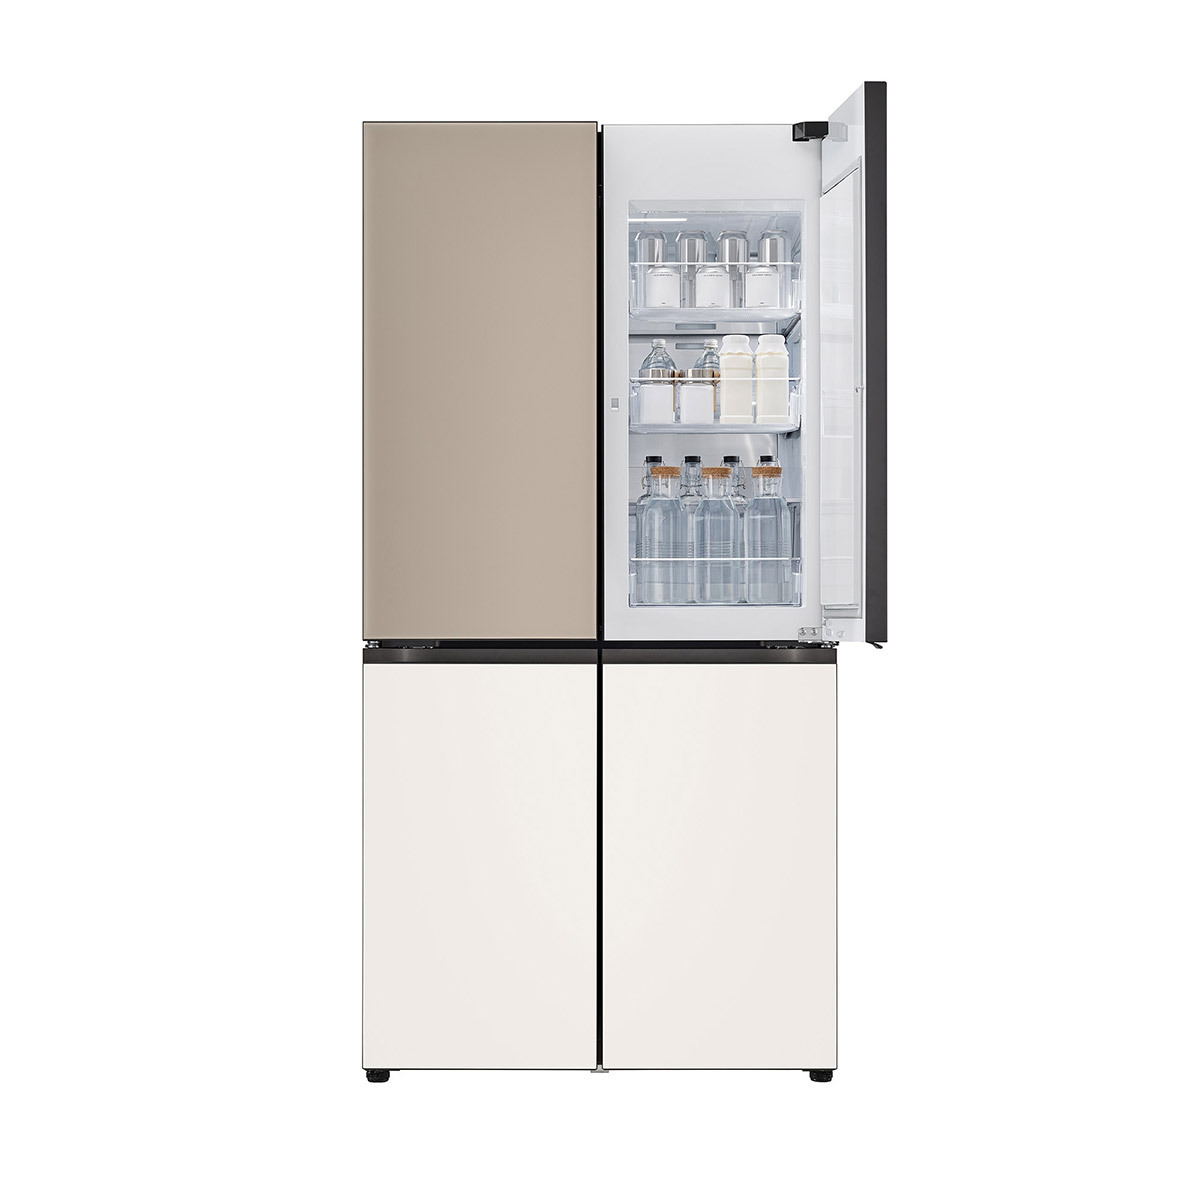 엘지 오브제 원매직 냉장고 875L - 브라운 베이지